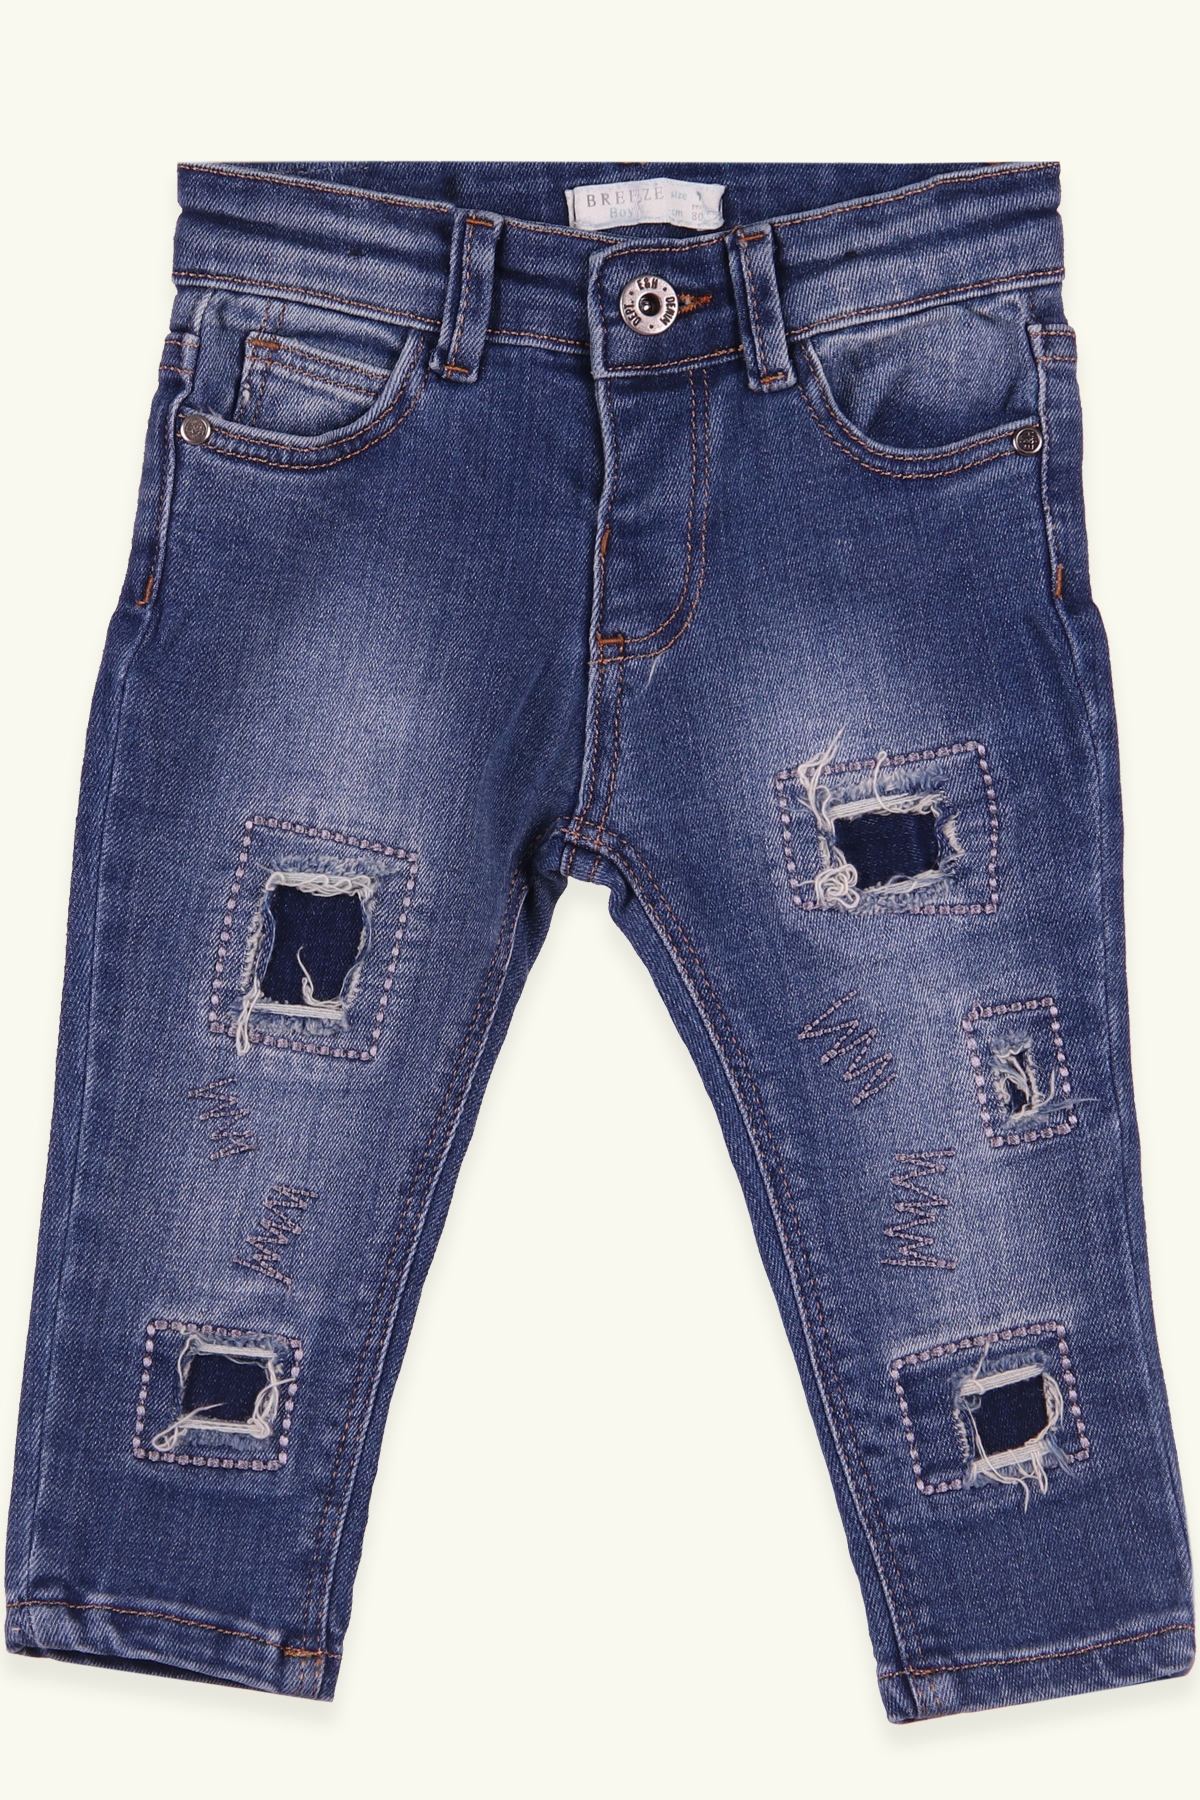 Mavi Renk Erkek Çocuk Yırtık Kot Pantolon | 1 - 4 Yaş | Breeze